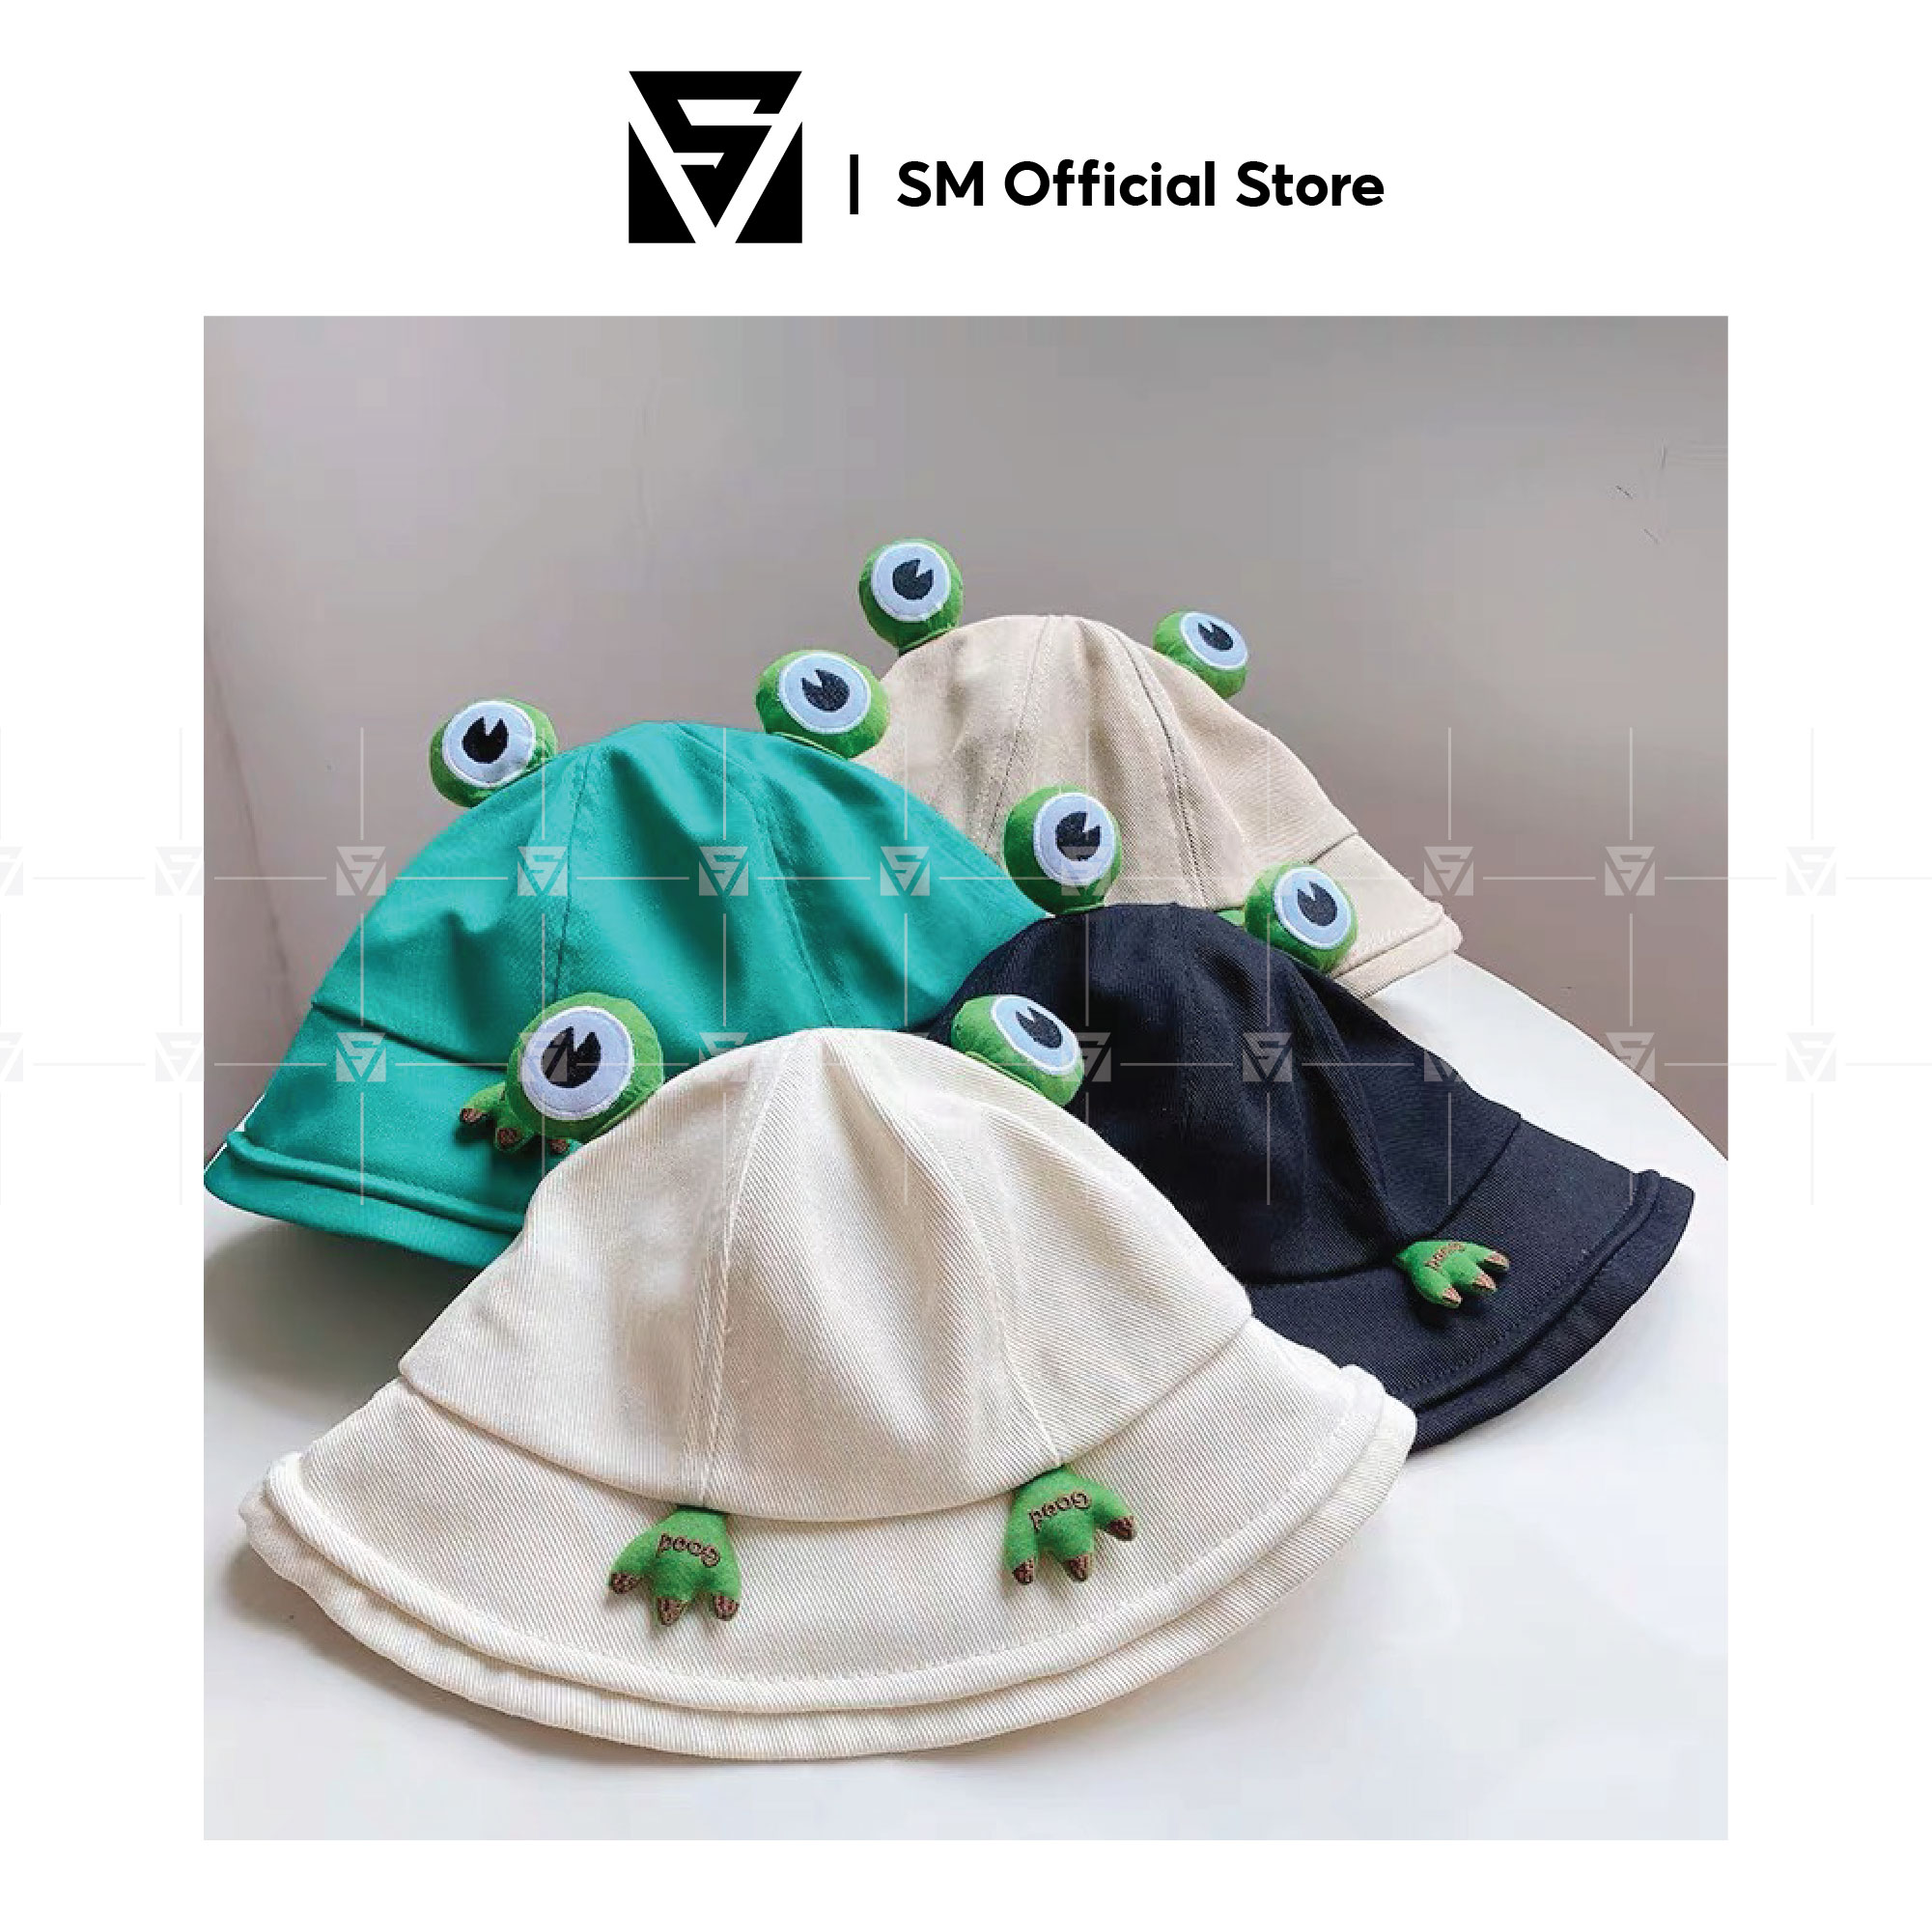 Mũ Nón Bucket Hat Hình Ếch Dành Cho Unisex Nam Nữ Phong Cách Ulzzang Hàn Quốc - SMN029